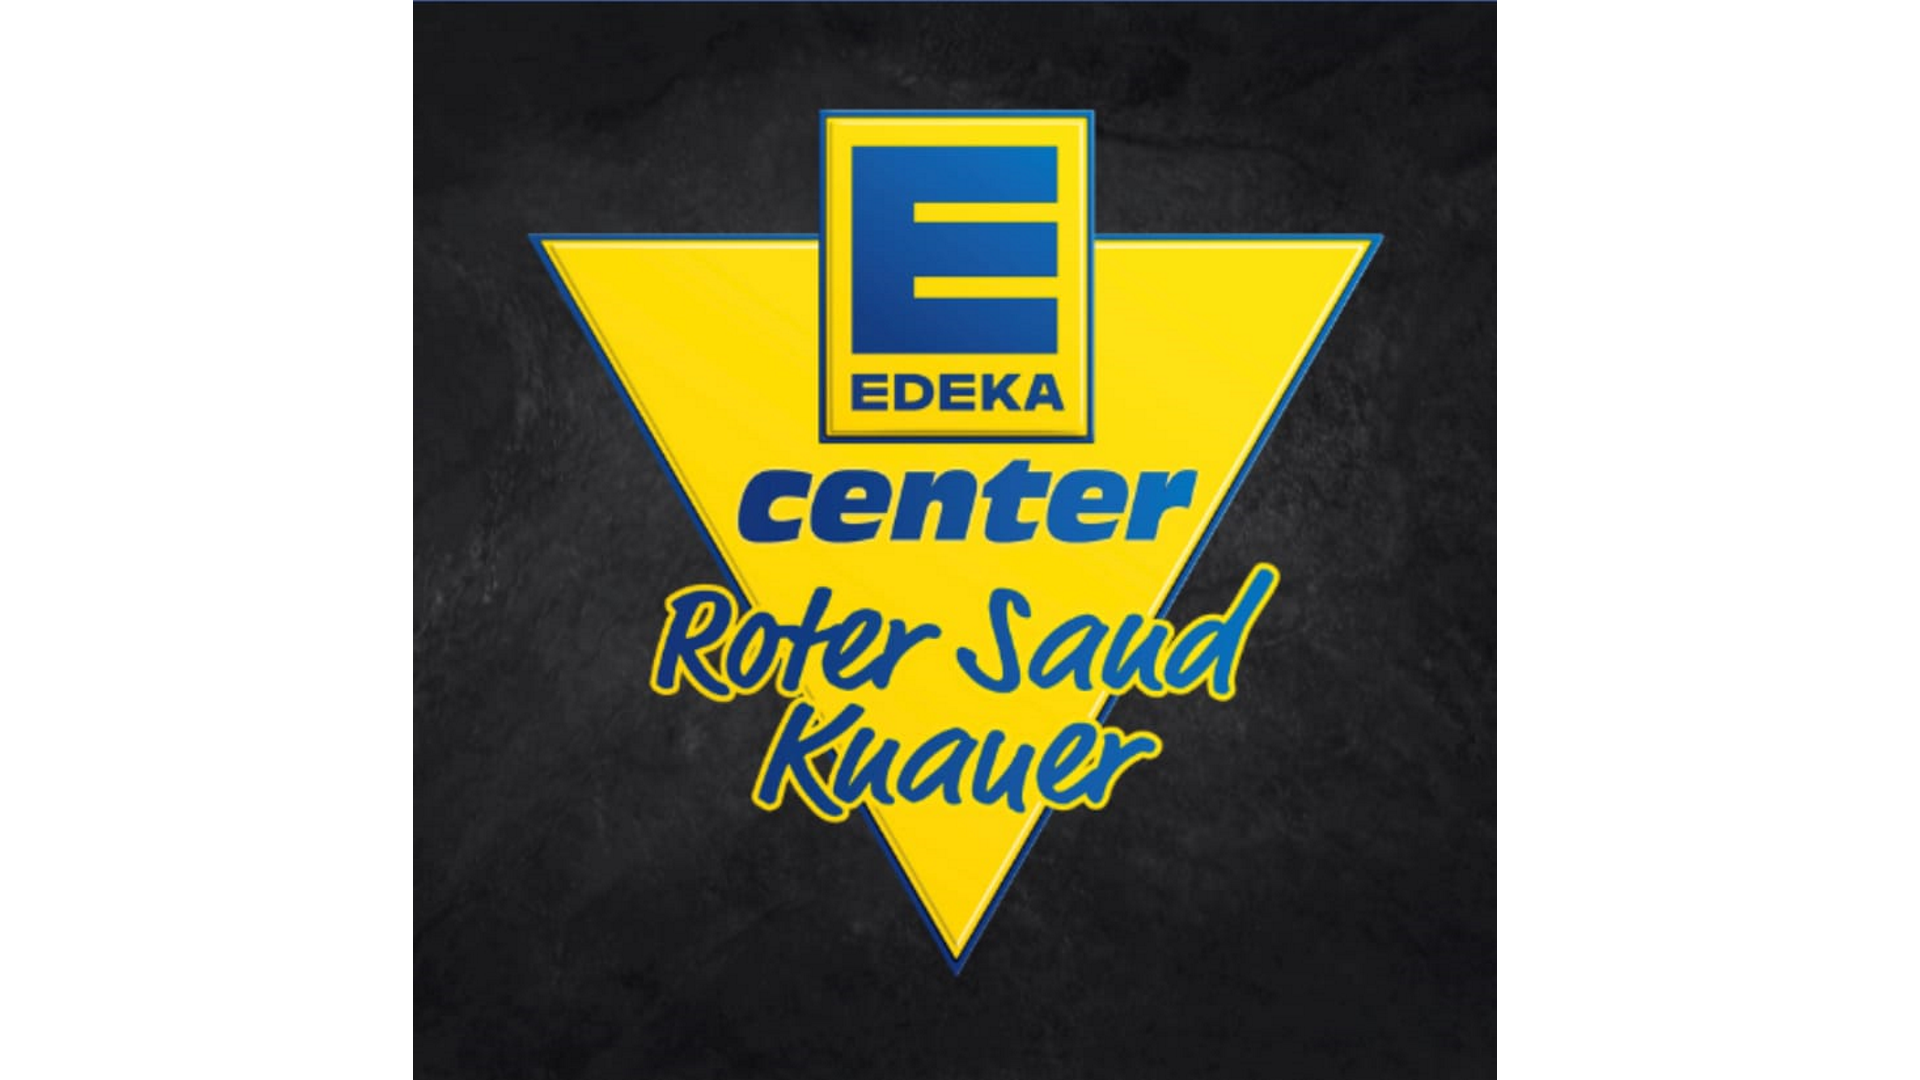 Edeka Center Roter Sand - Knauer